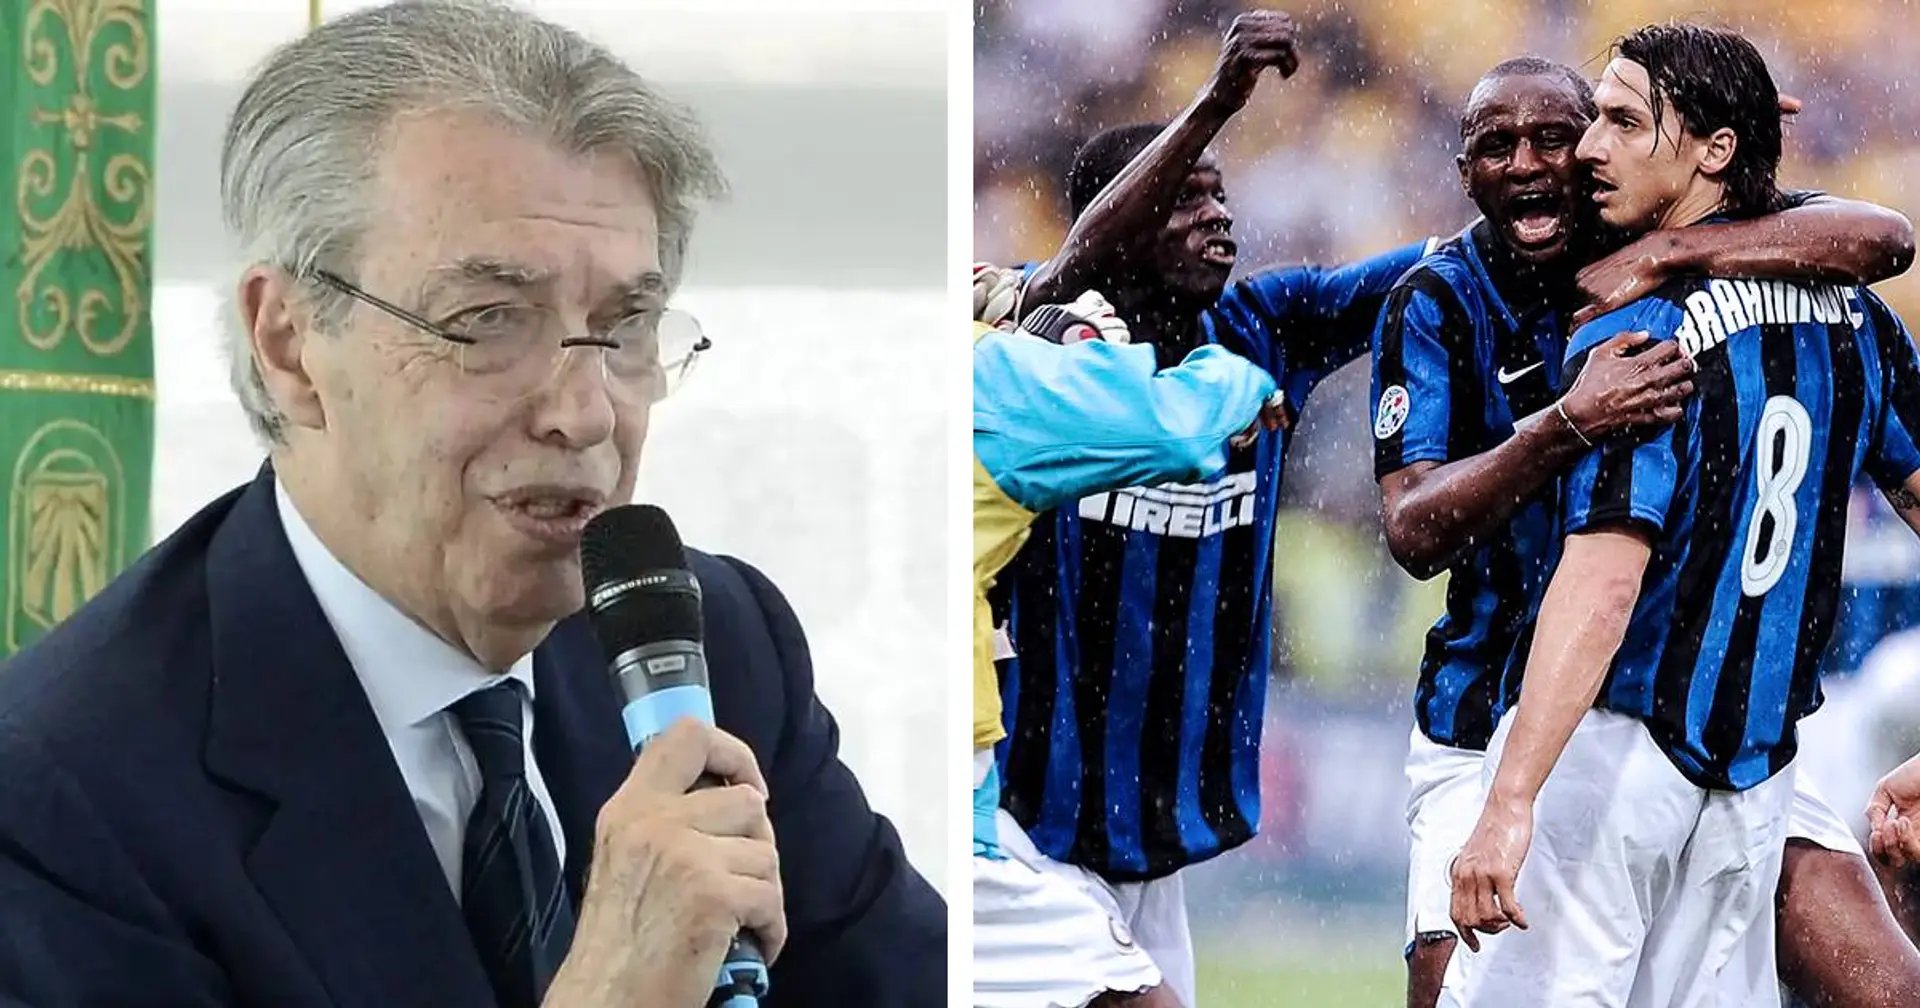 "Non si amavano, mi chiedevano di cedere l’altro": il curioso retroscena di Moratti ai tempi dell’Inter